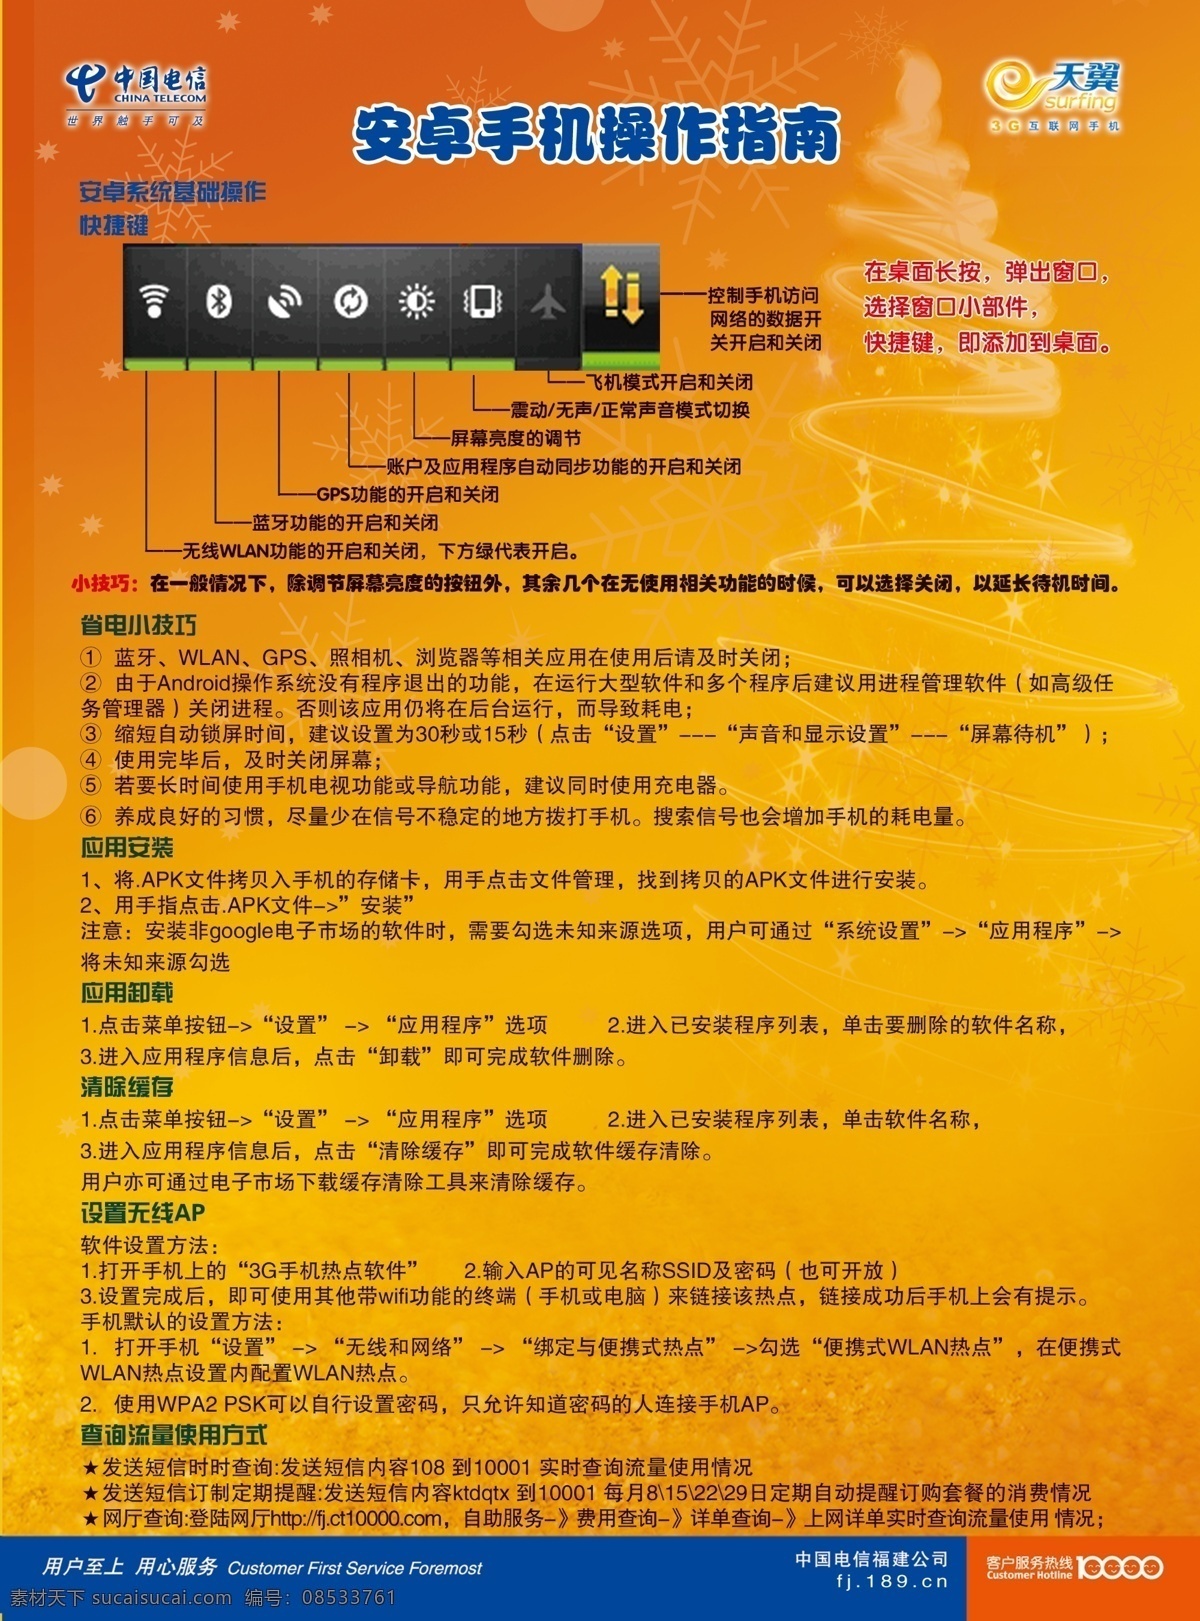 安卓 手机 操作指南 3g dm宣传单 安卓手机 广告设计模板 天翼 源文件 中国电信 矢量图 现代科技